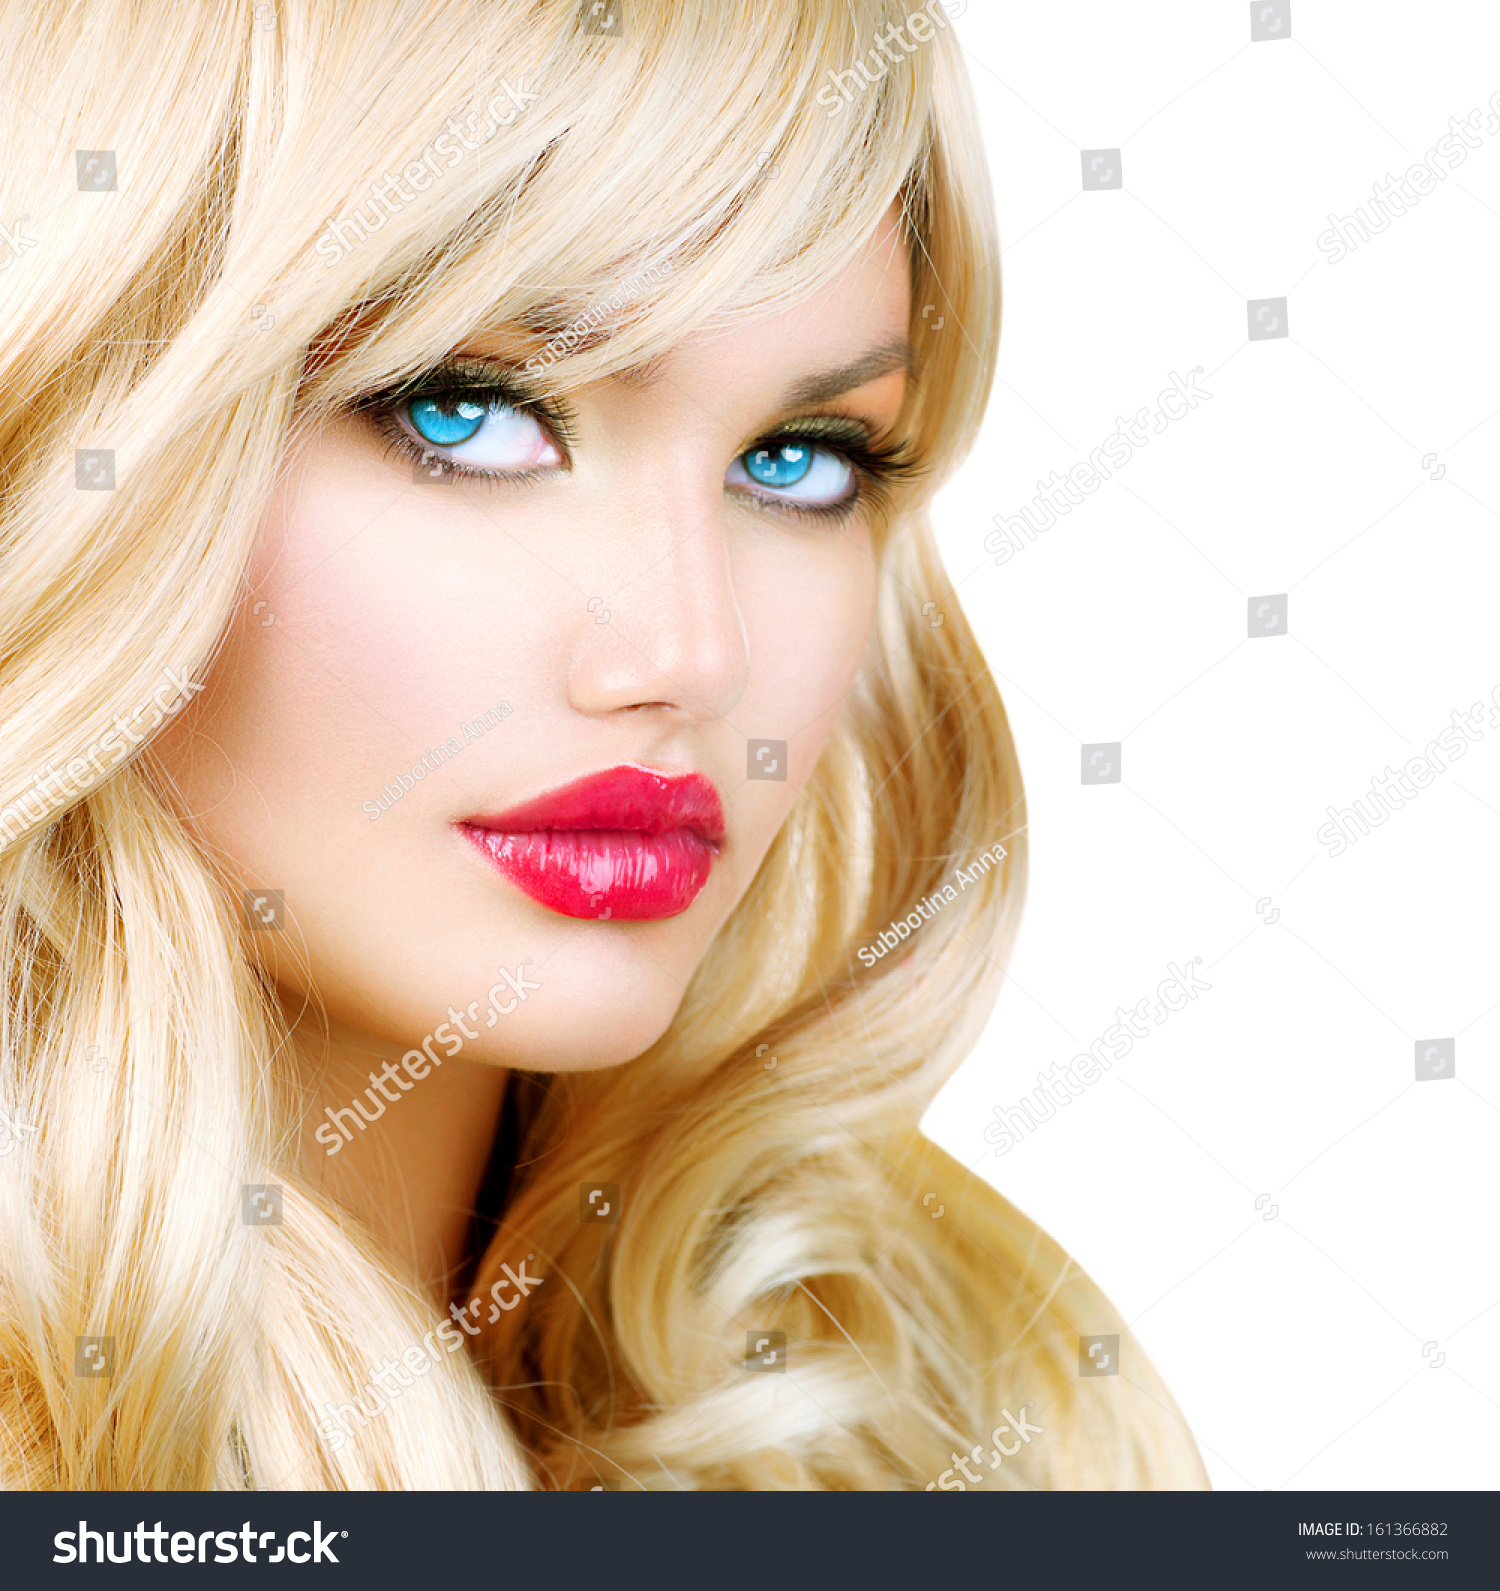 Beauty Blonde Woman Portrait Beautiful Blond Stock Photo 161366882 ...